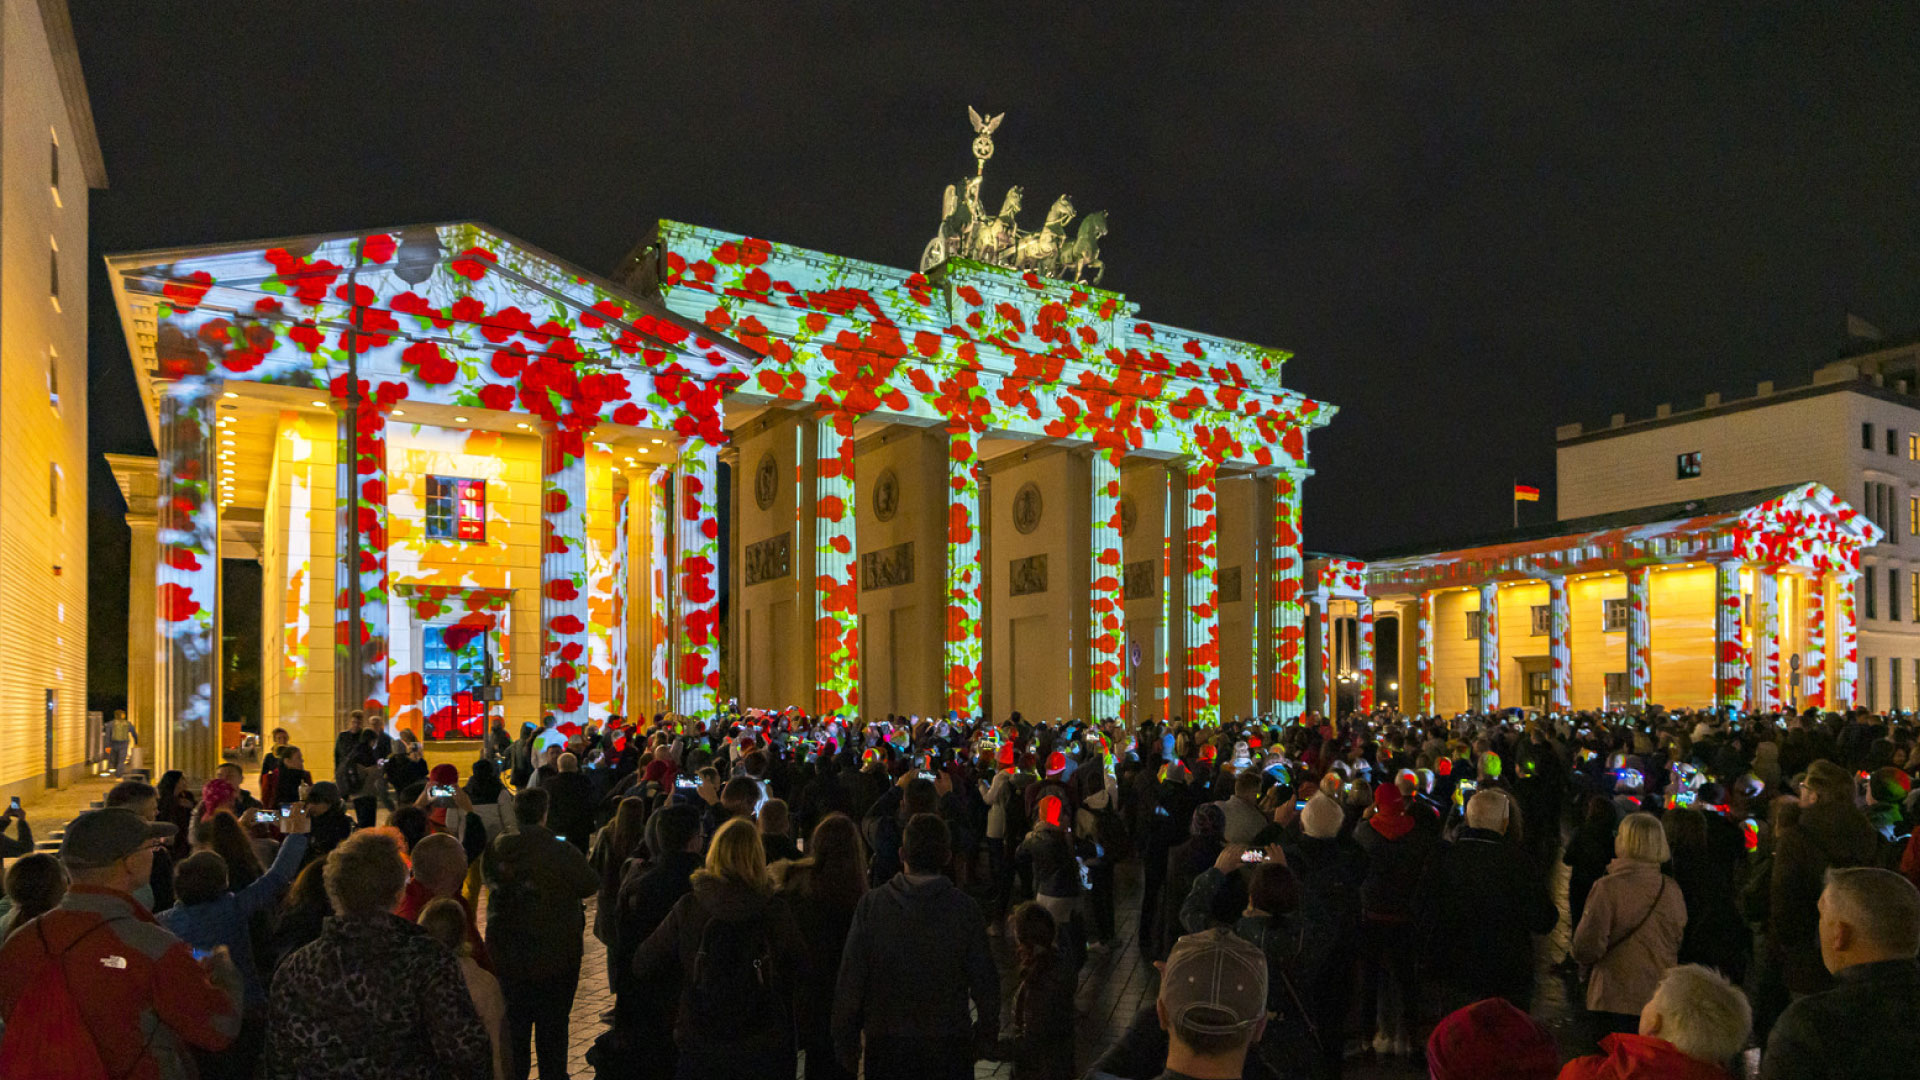 PRG leverde meer dan 20 projectoren voor de realisatie van deze verlichtingen tijdens het Festival of Lights in Berlijn op verschillende locaties.